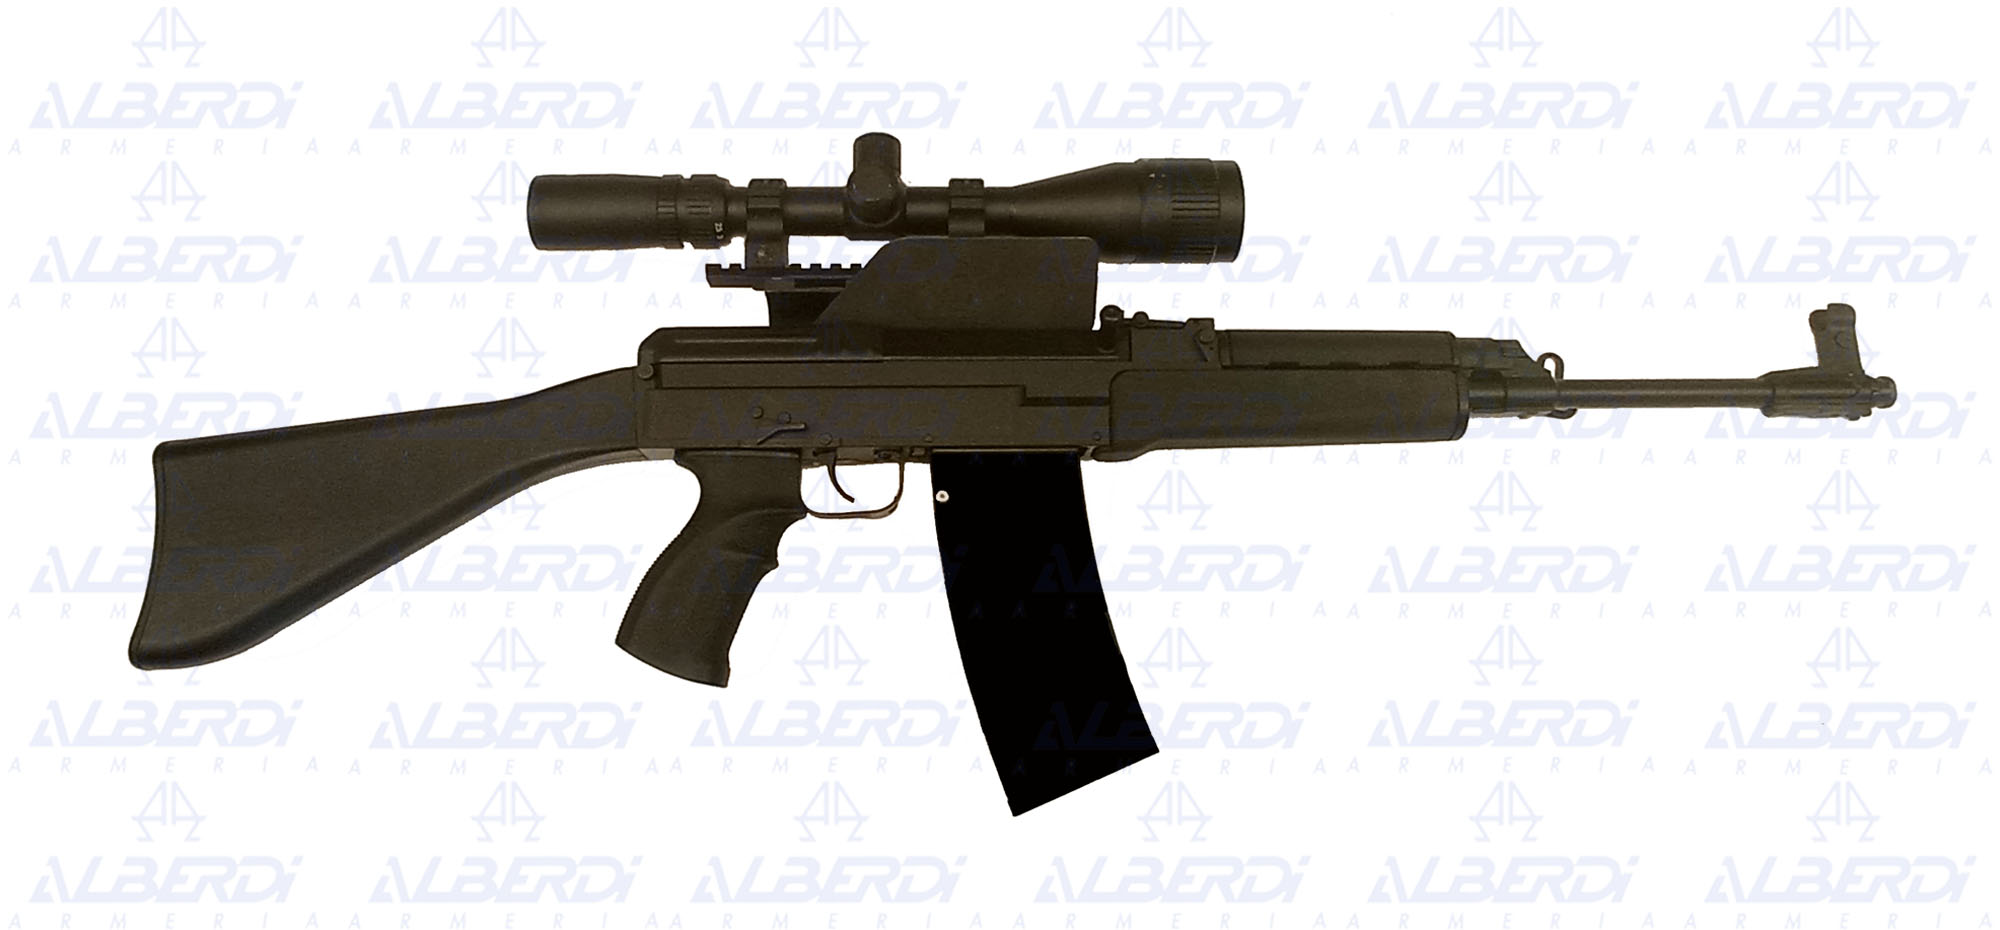 Rifle SA (CZECH SMALLS ARMS) modelo JZ58 SPORTER nº5220067 1 B C A